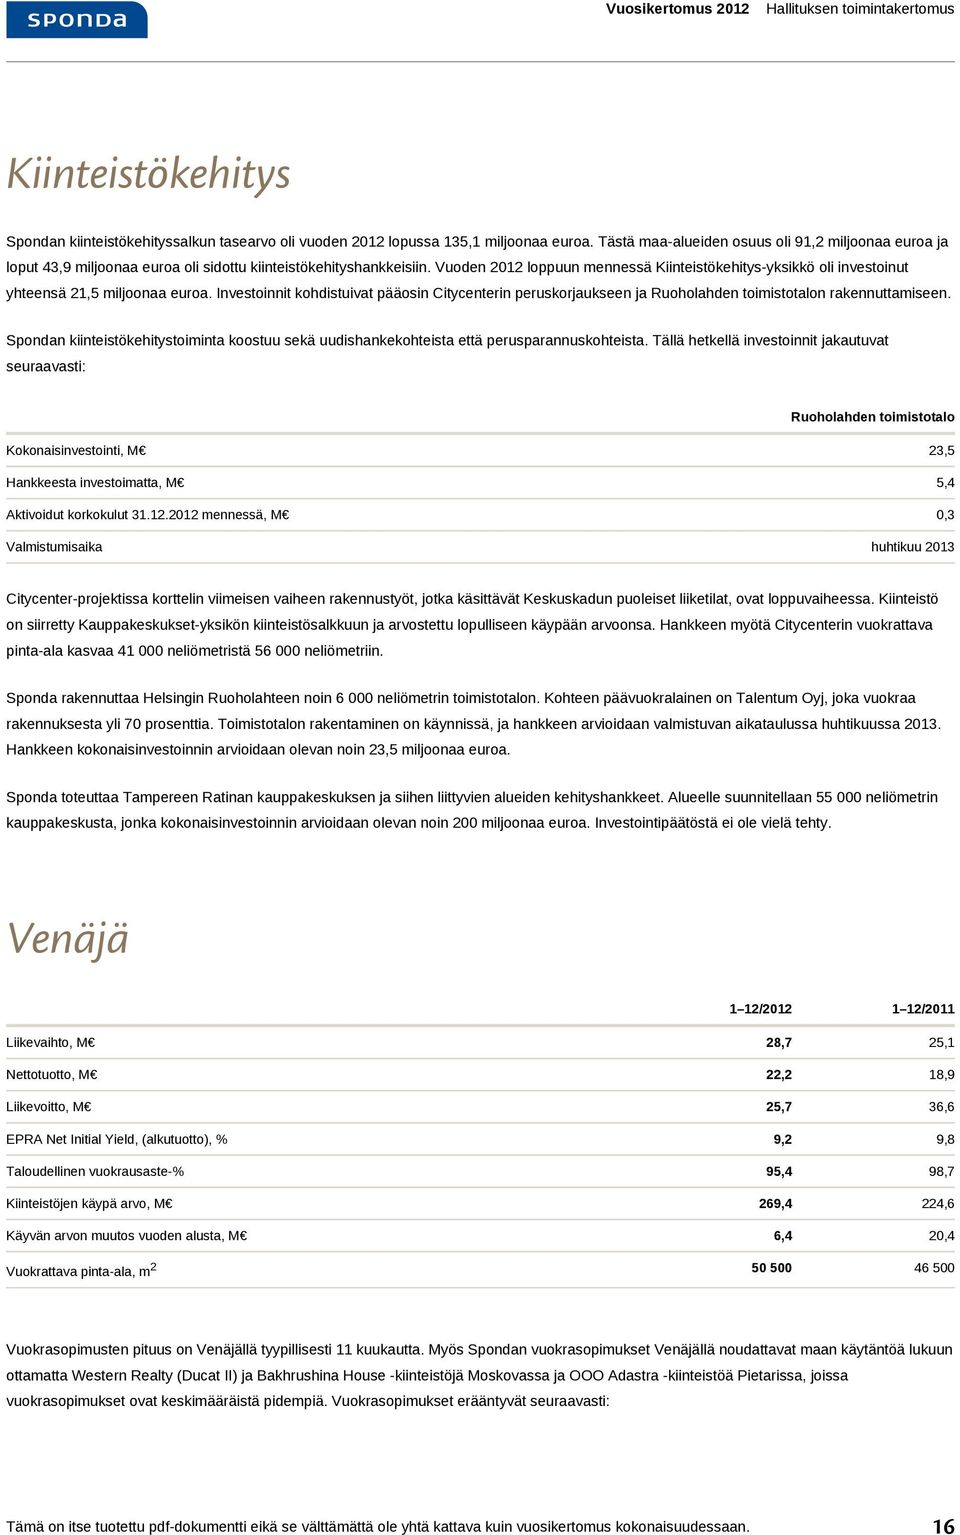 Vuoden 2012 loppuun mennessä Kiinteistökehitys-yksikkö oli investoinut yhteensä 21,5 miljoonaa euroa.